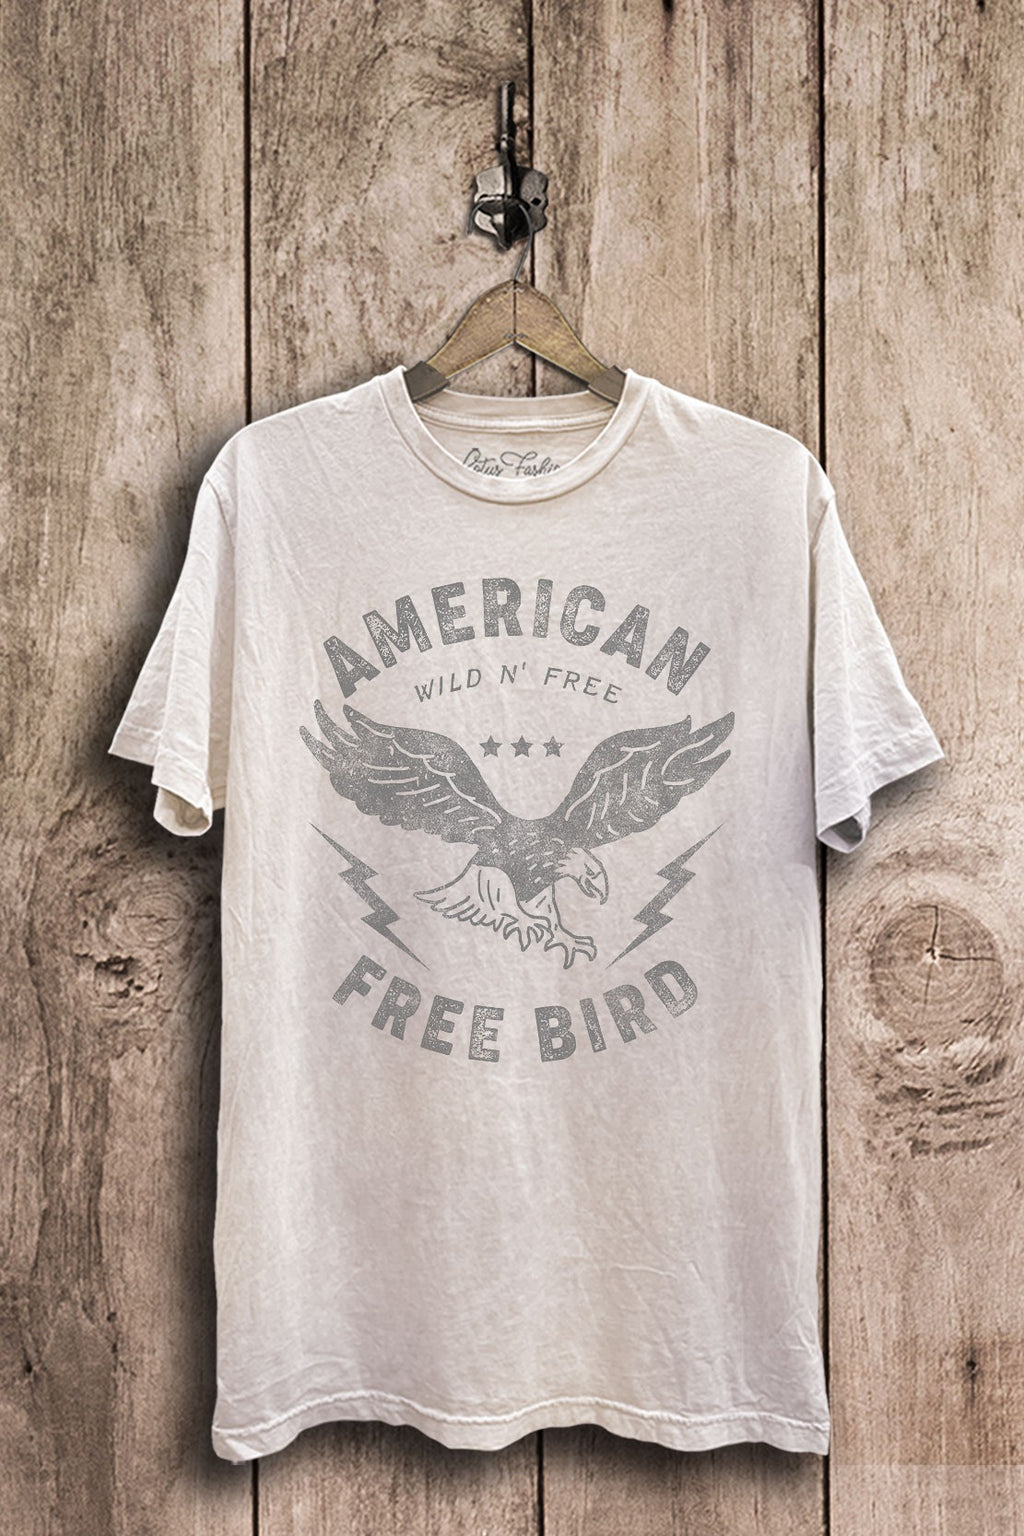 American Free Bird Tee